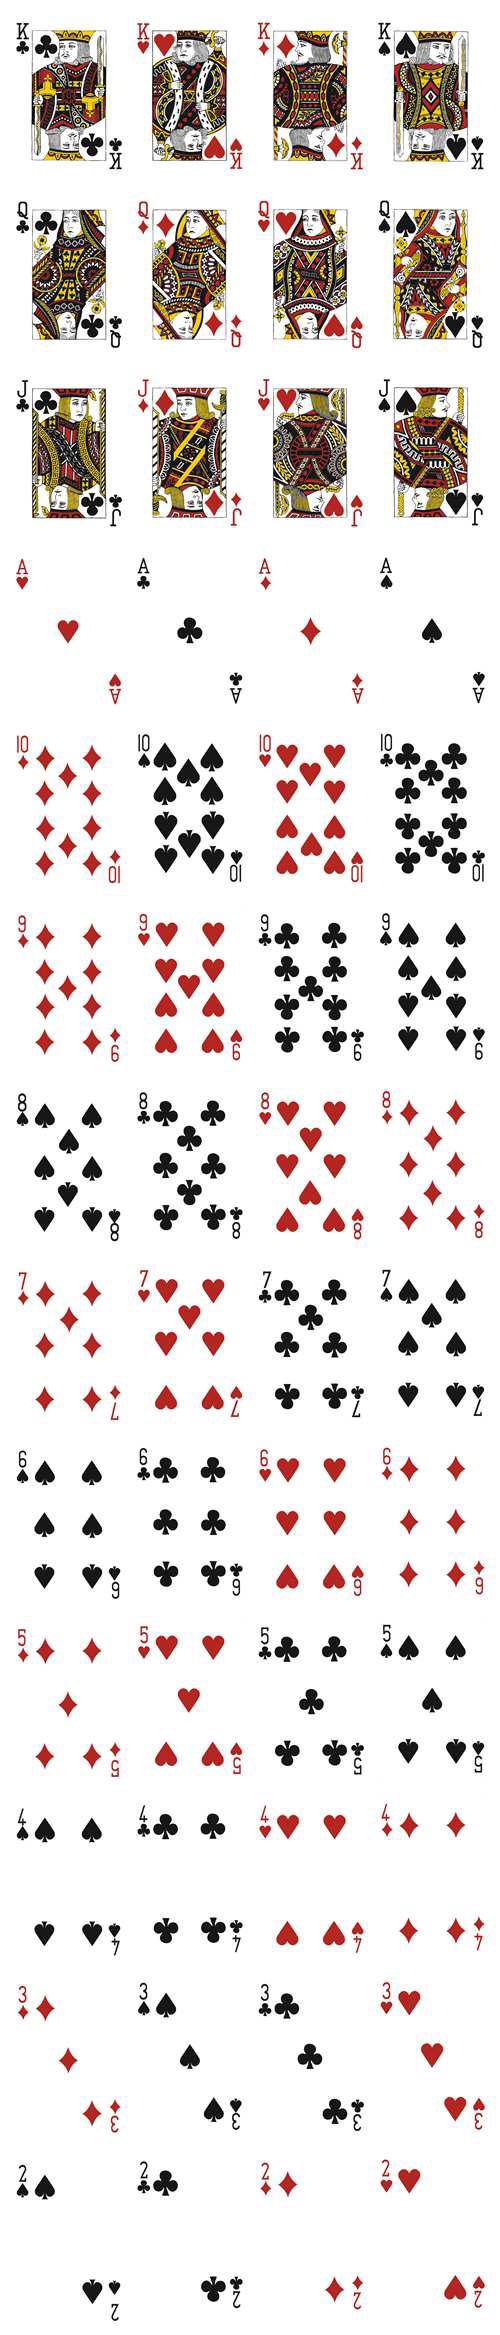 如何设计一副扑克牌